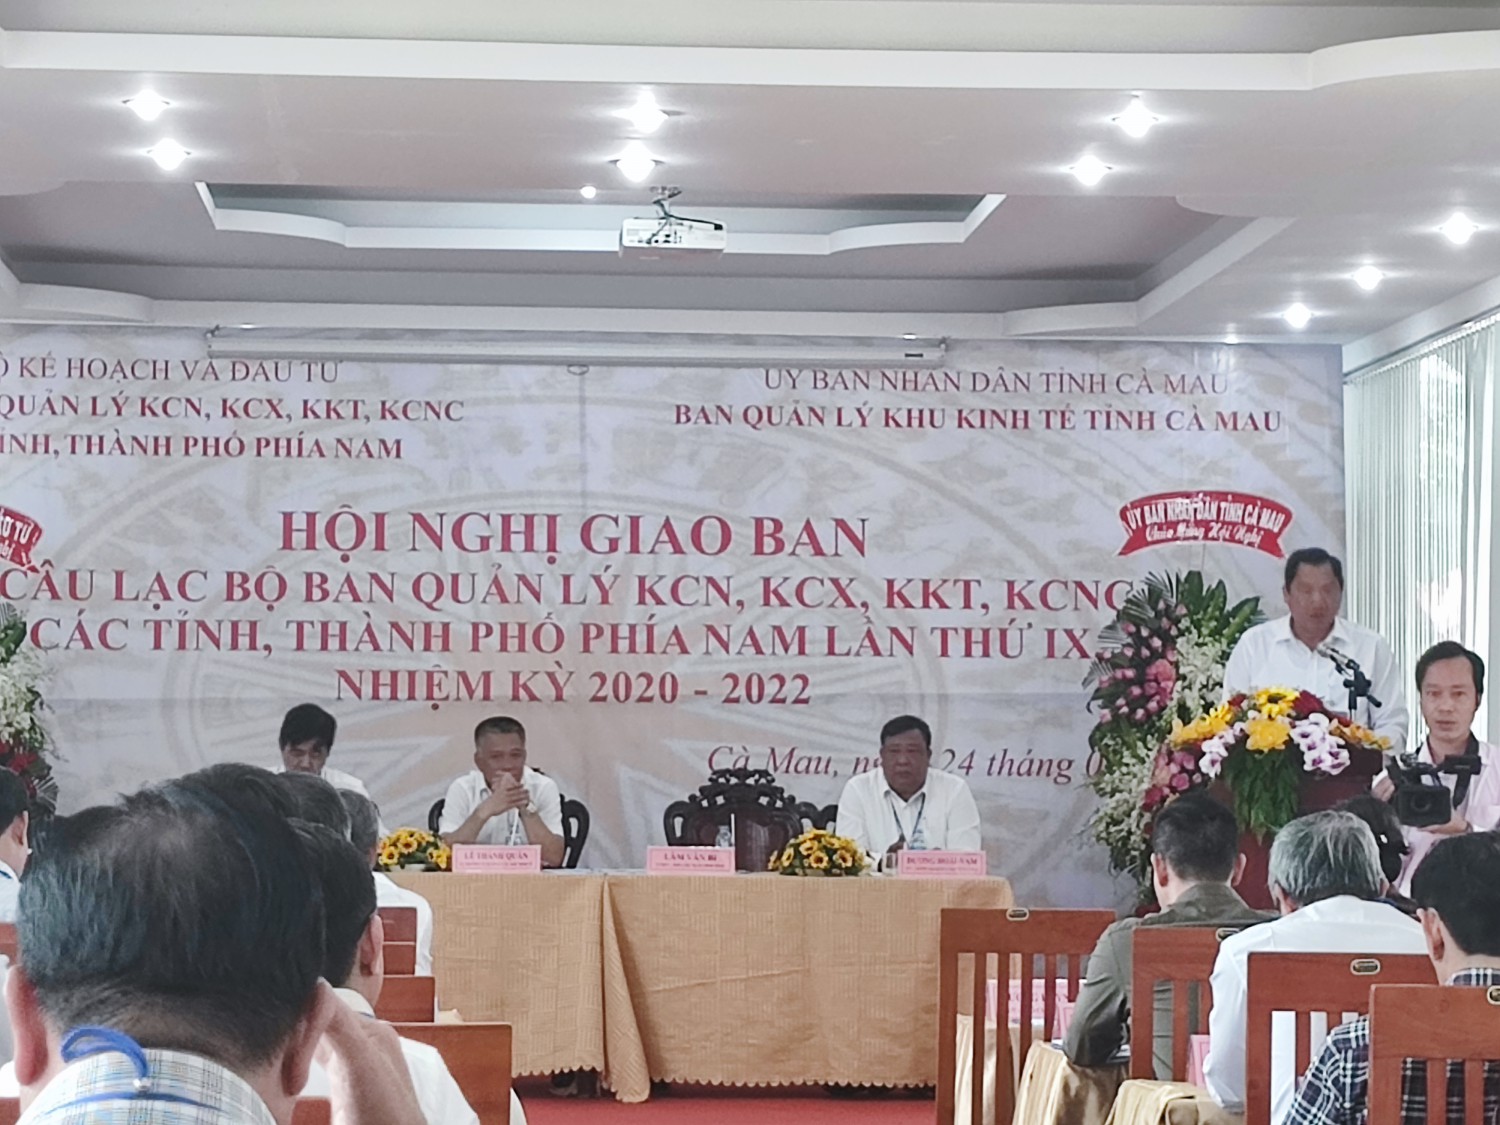 Hội nghị giao ban câu lạc bộ Ban Quản lý KCN, KCX, KKT, KCNC cás tỉnh phía Nam lần thứ IX tại Cà Mau